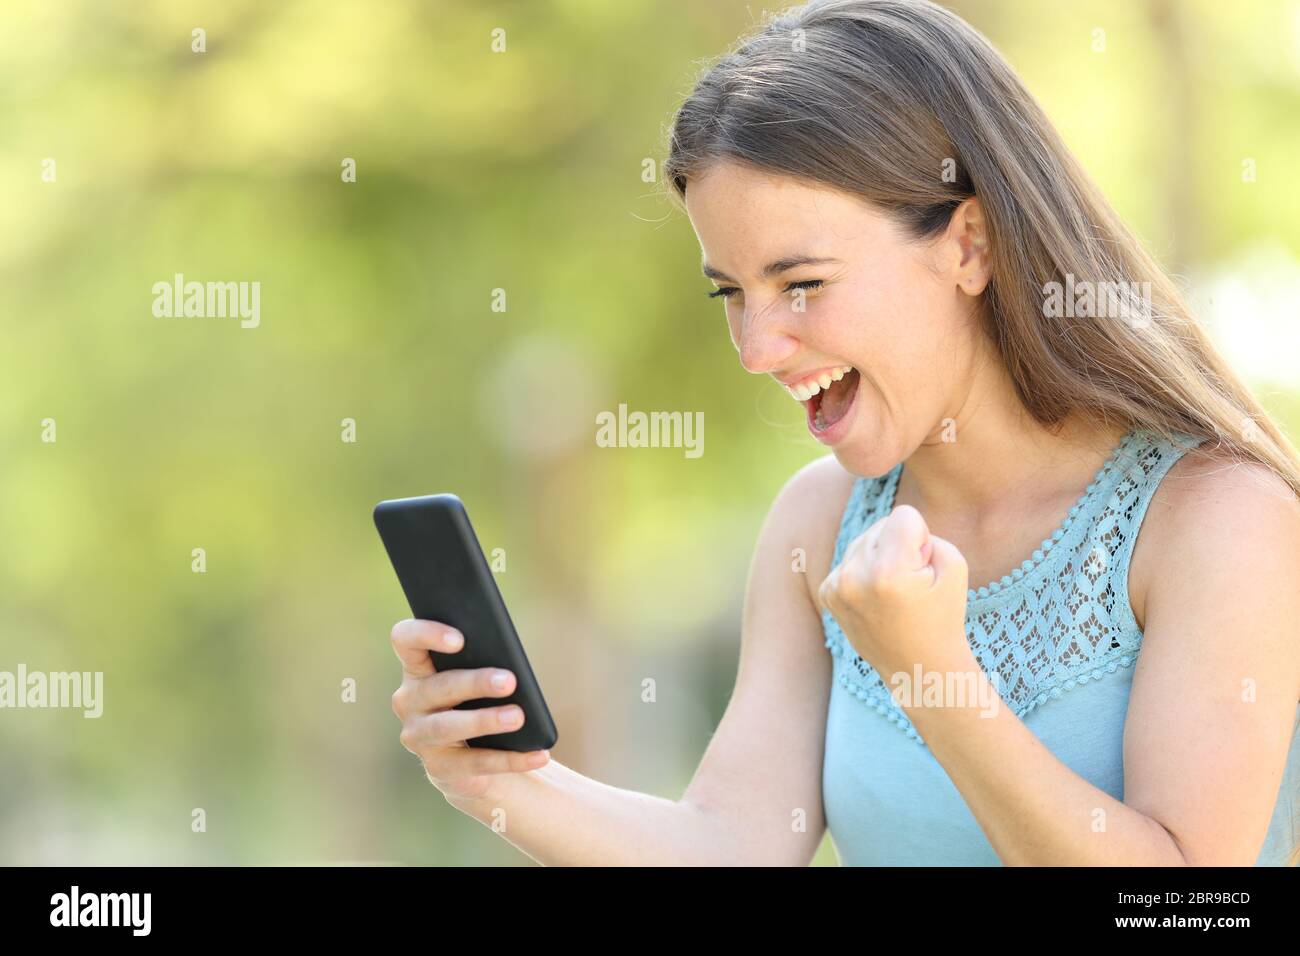 Chica encontrar interesantes contenidos en línea en el teléfono inteligente en un parque con un fondo verde Foto de stock